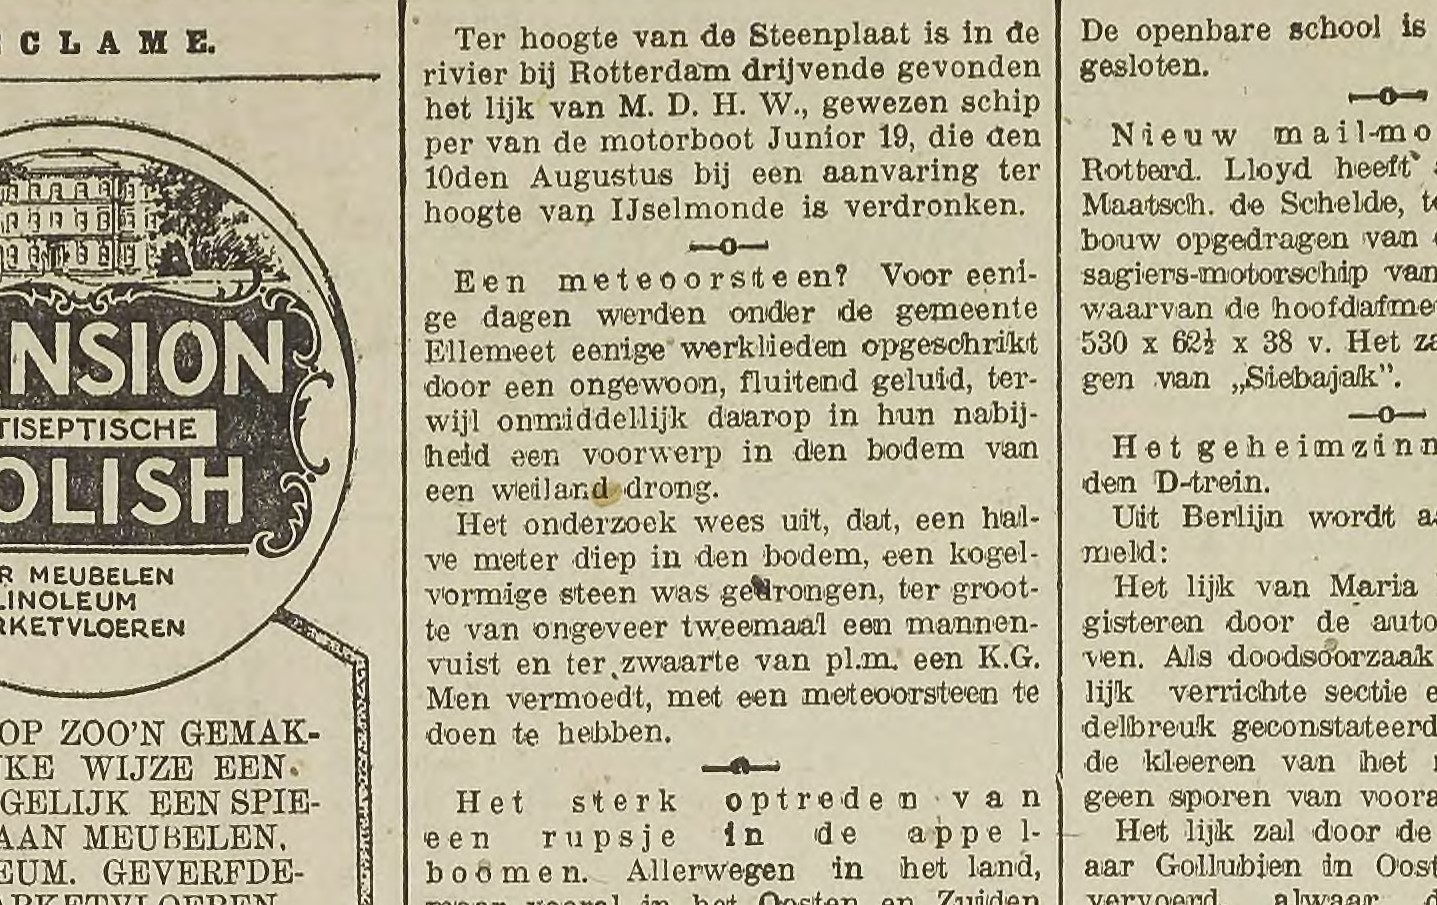 Utrechtsch Nieuwsblad 1925 09 05 005 meteoorsteen Ellemeet